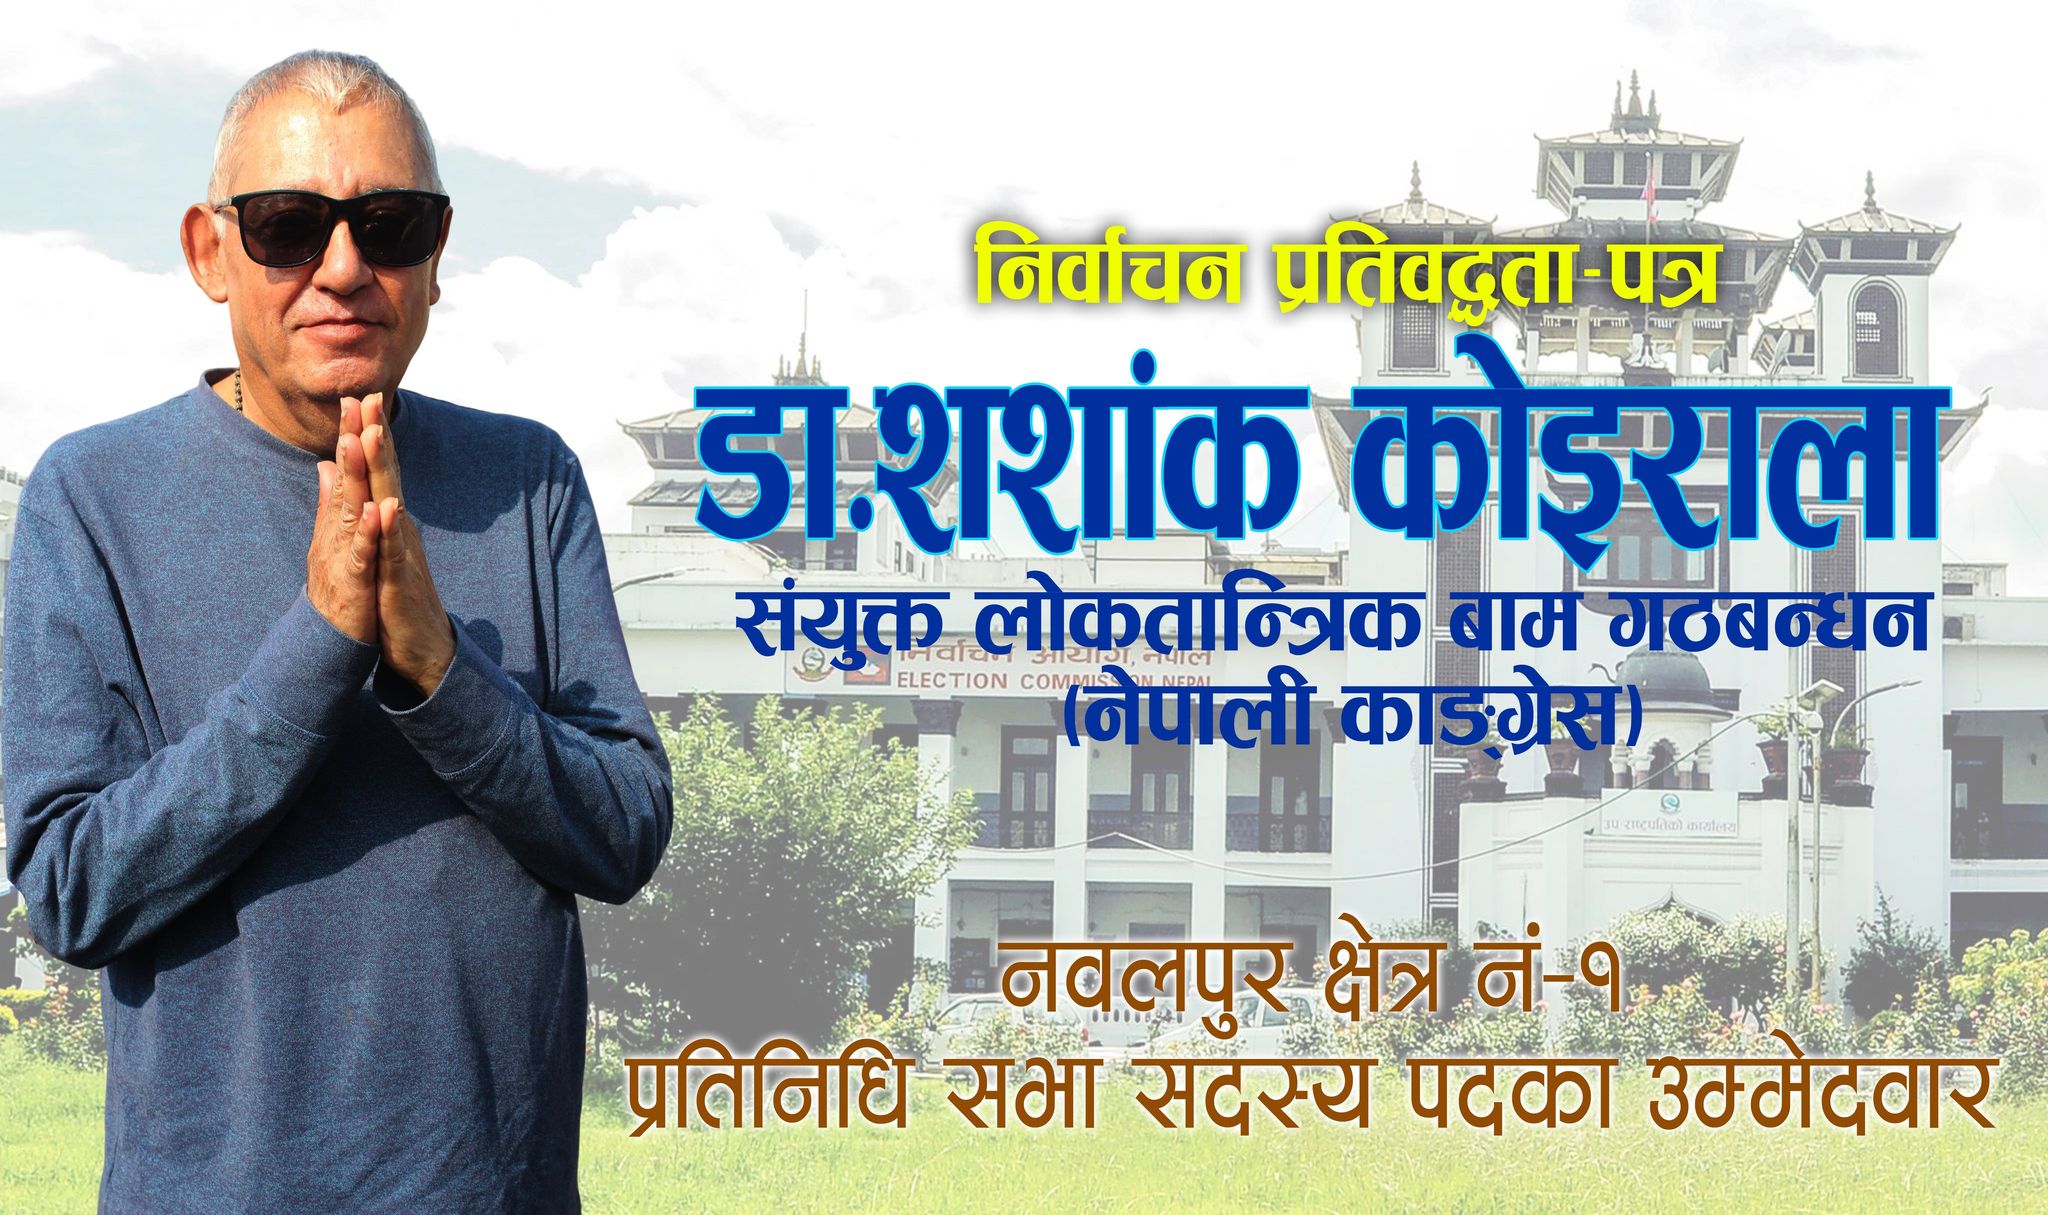 लोकतान्त्रिक बाम गठबन्धन (नेपाली काँग्रेस)का उम्मेदवार डा.शशांक कोइरालाको निर्वाचन प्रतिबद्धता पत्र (पूर्णपाठ)